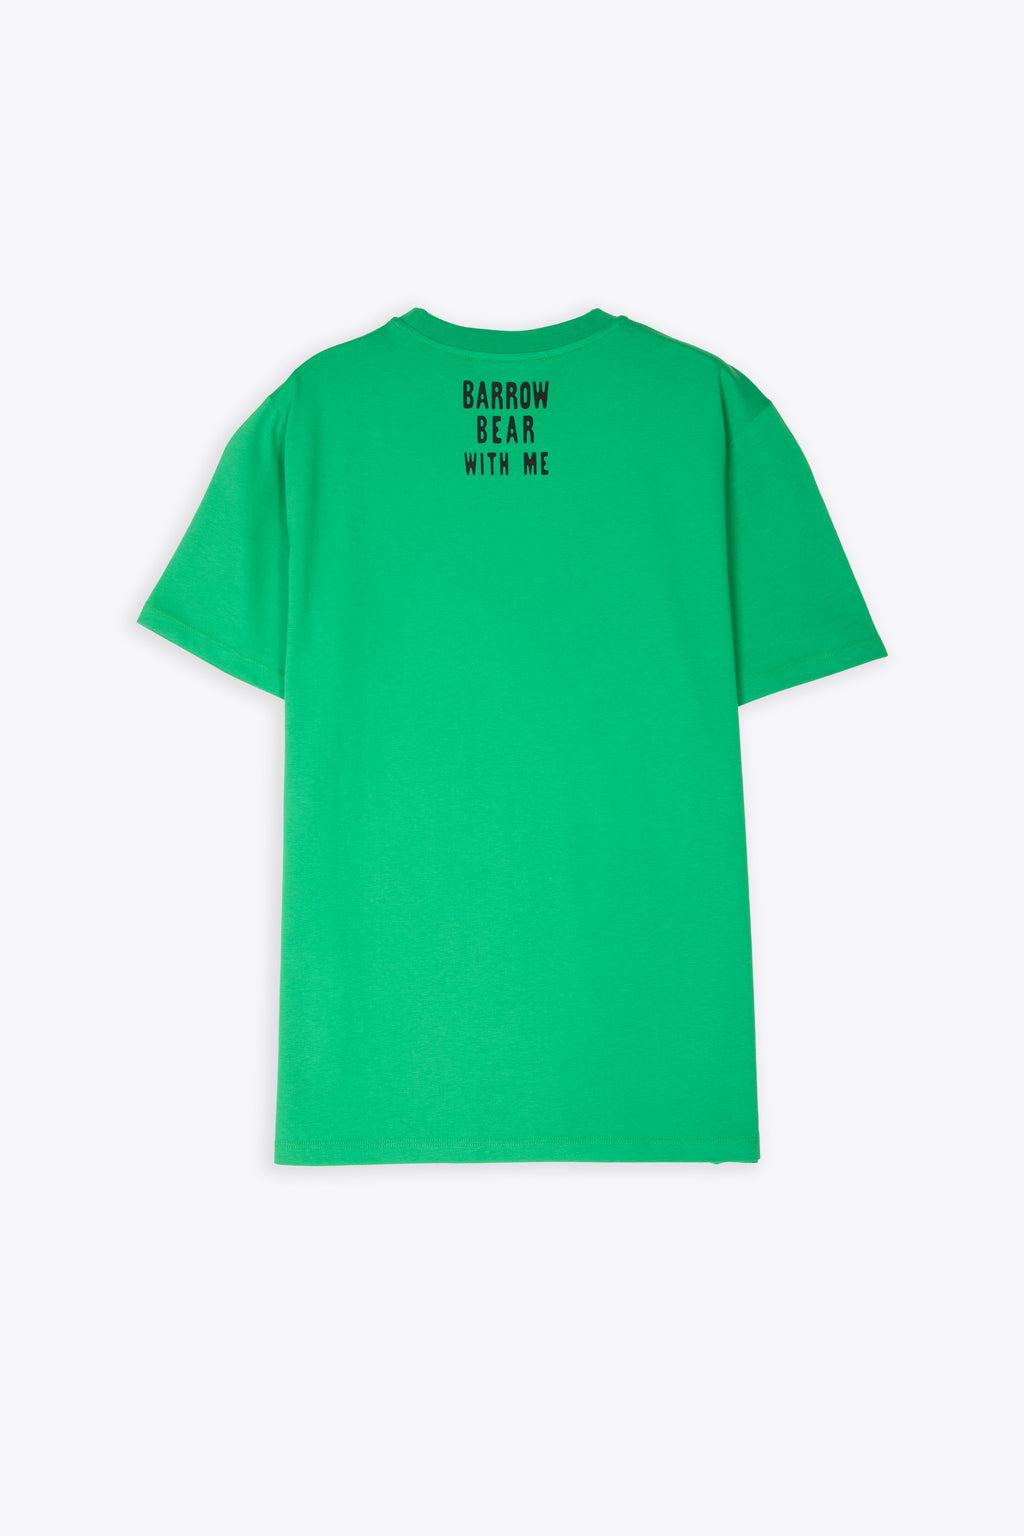 alt-image__T-shirt-verde-con-teddy-bear-al-petto-e-slogan-sul-retro